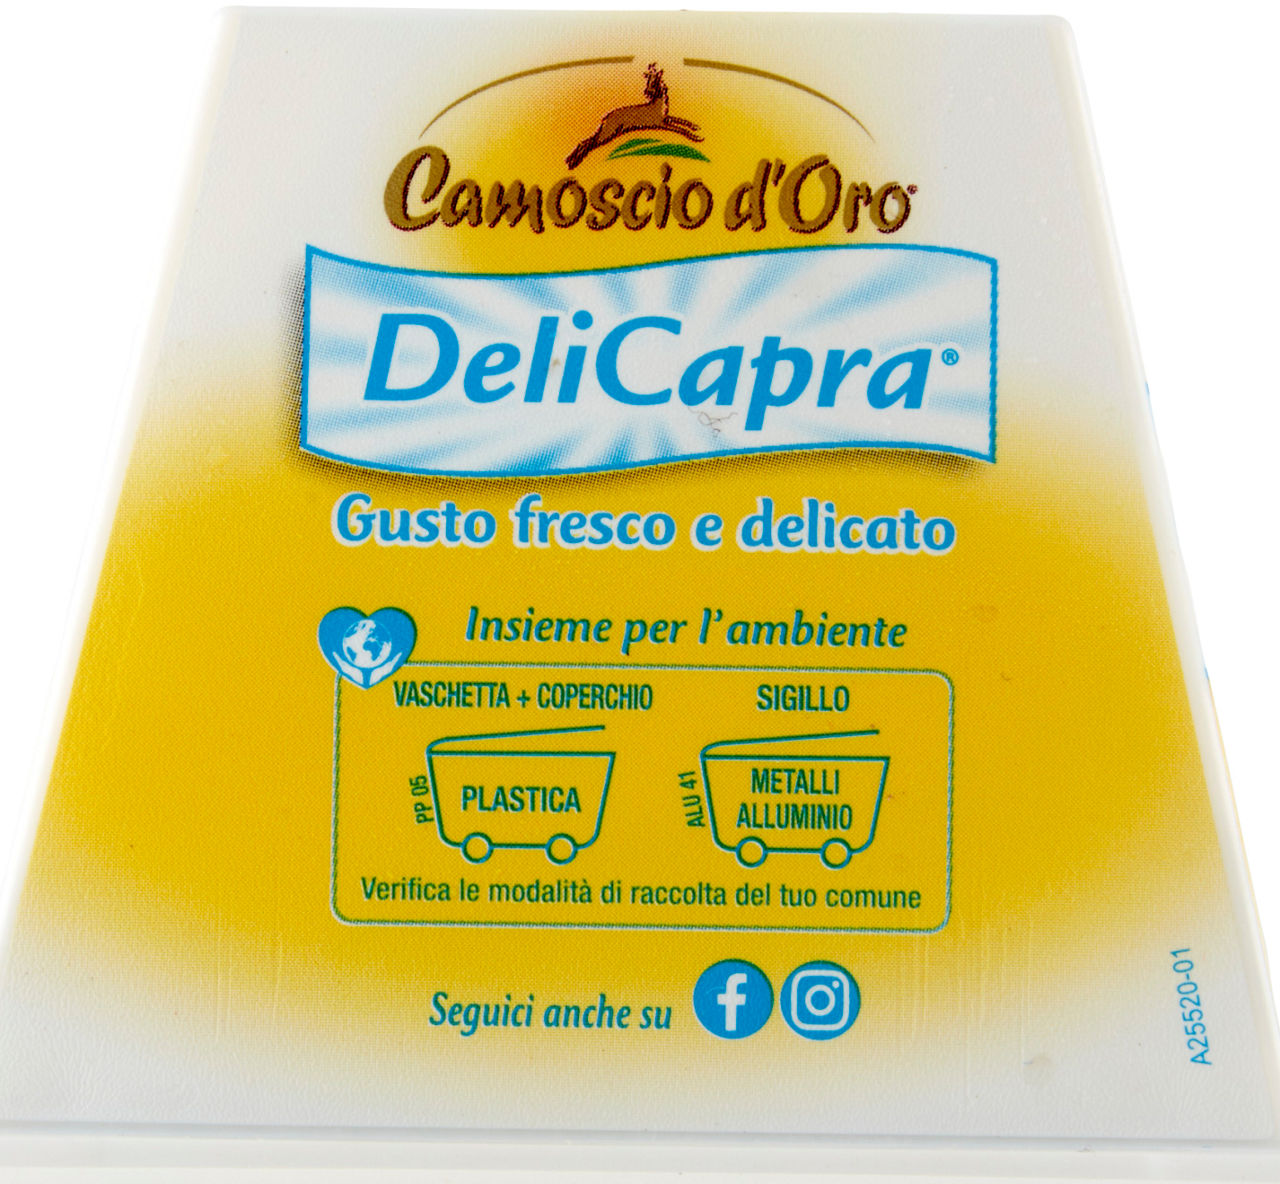 CAMOSCIO D'ORO DELICAPRA SPALMABILE SAVENCIA VASCHETTA 150 G - 7